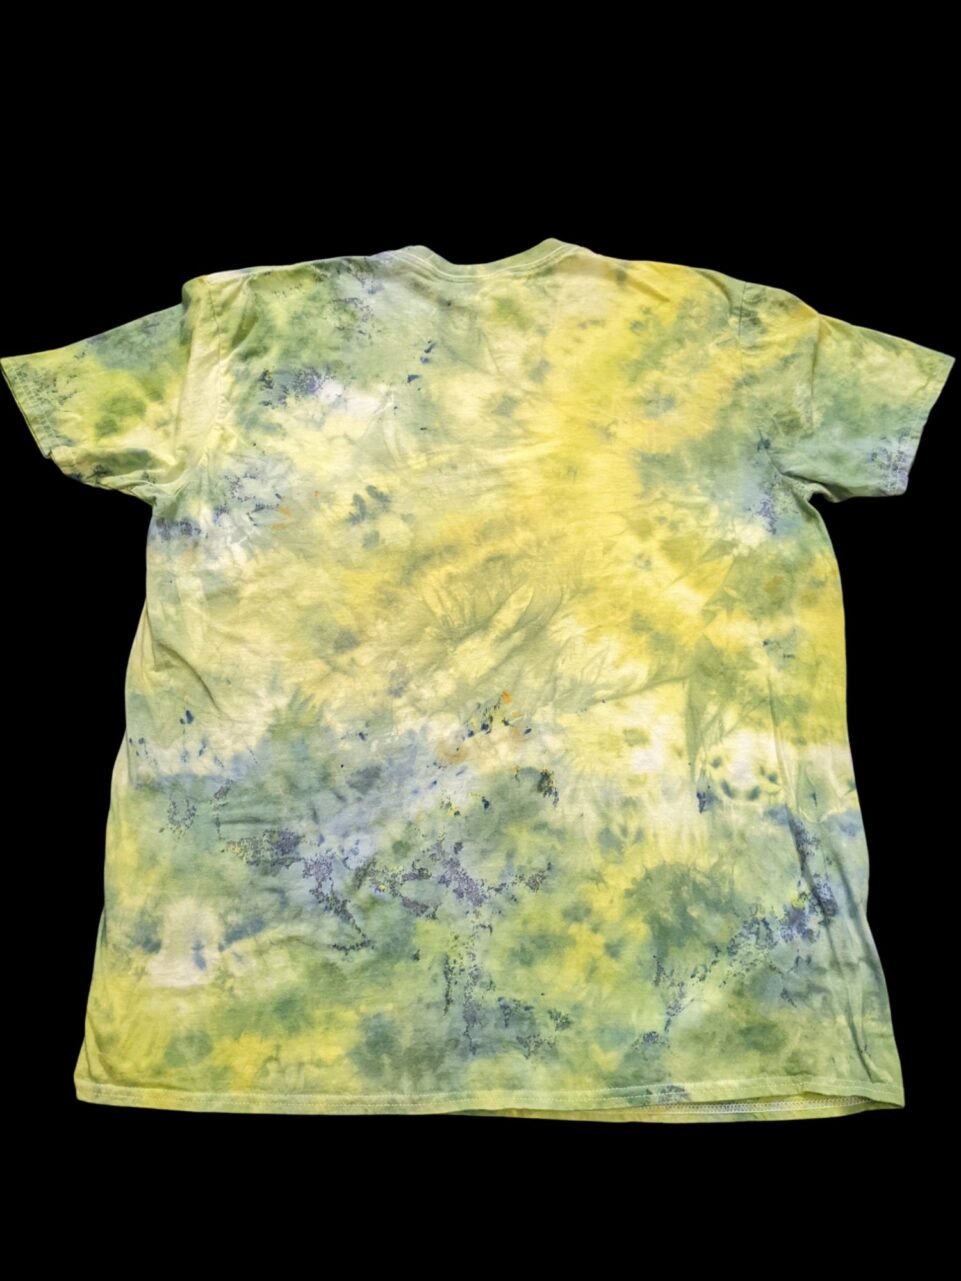 T-shirt & Tie-Dye Blue Ready – to Yellow,Green Ship* Scrunch Shop Iowa